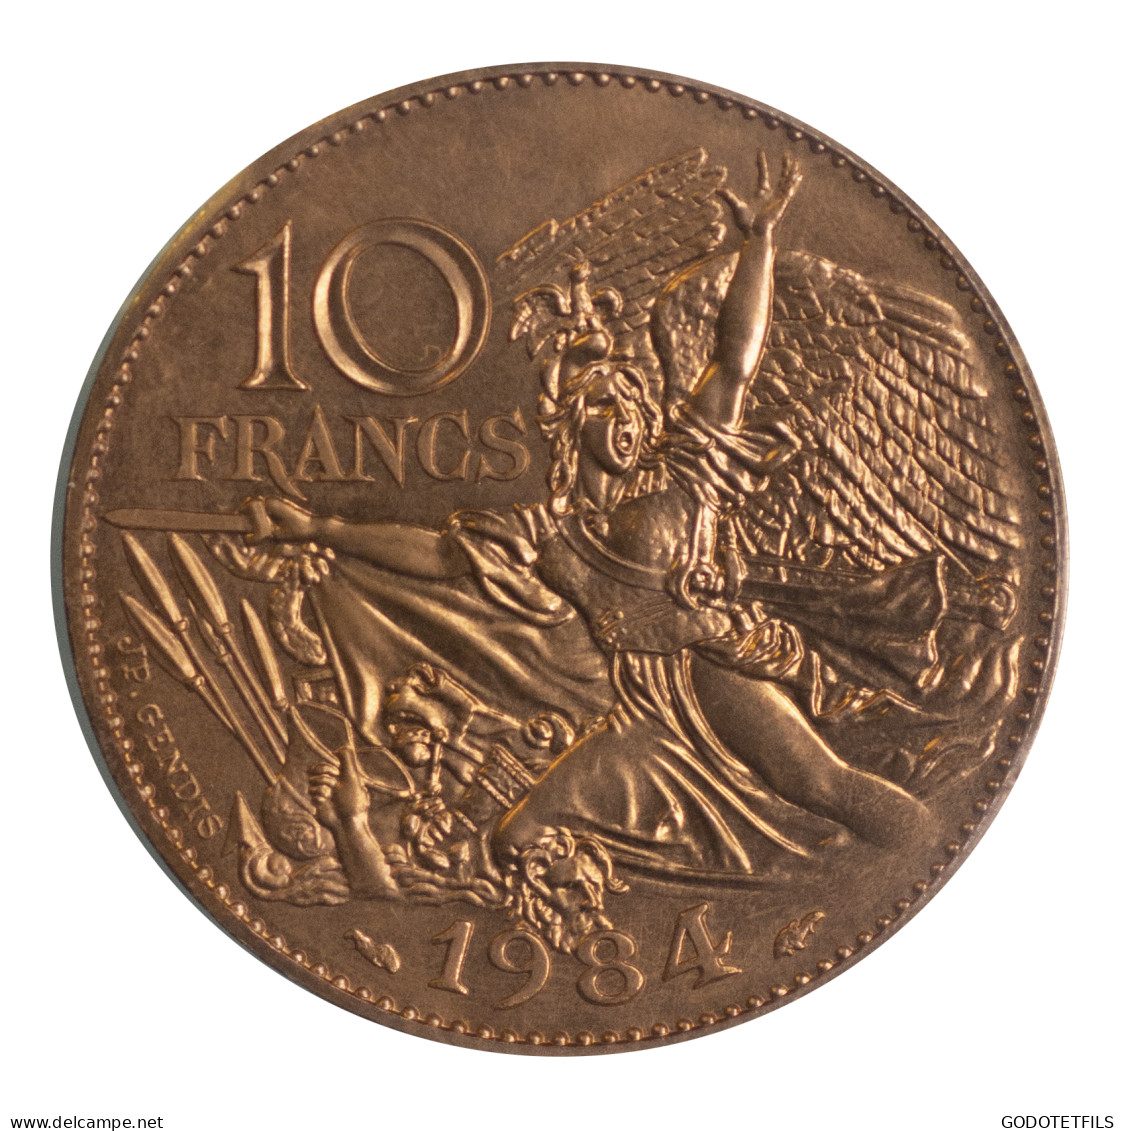 10 Francs François Rude-Essai-1984 - Proeven